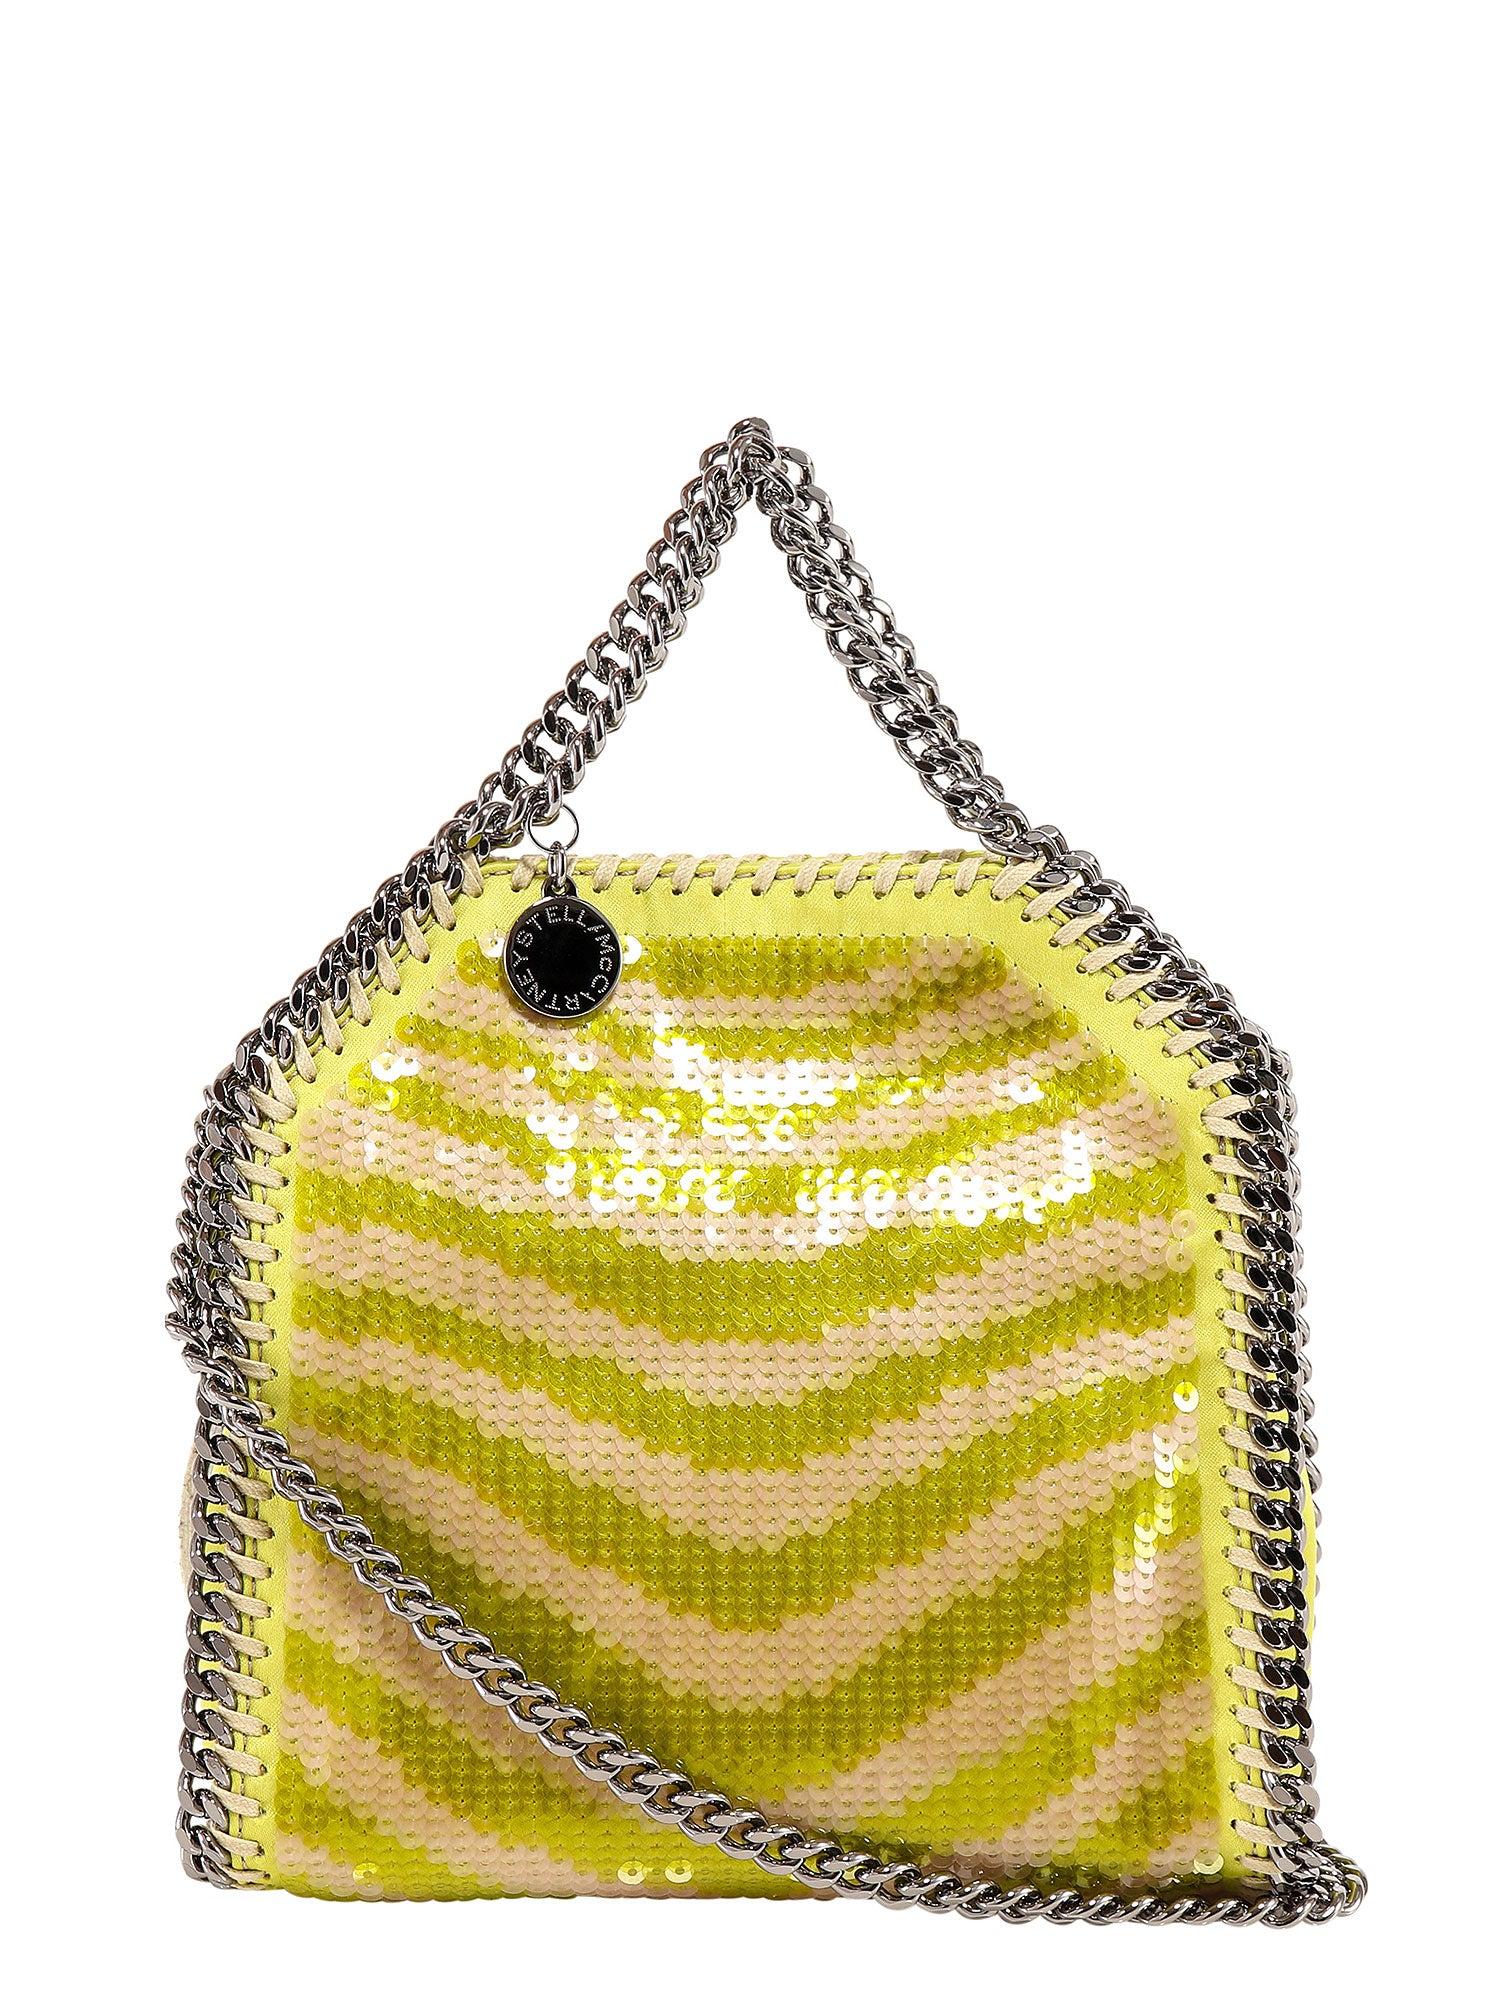 Totes bags Stella Mccartney - Golden Falabella mini tote - 371223W90568000